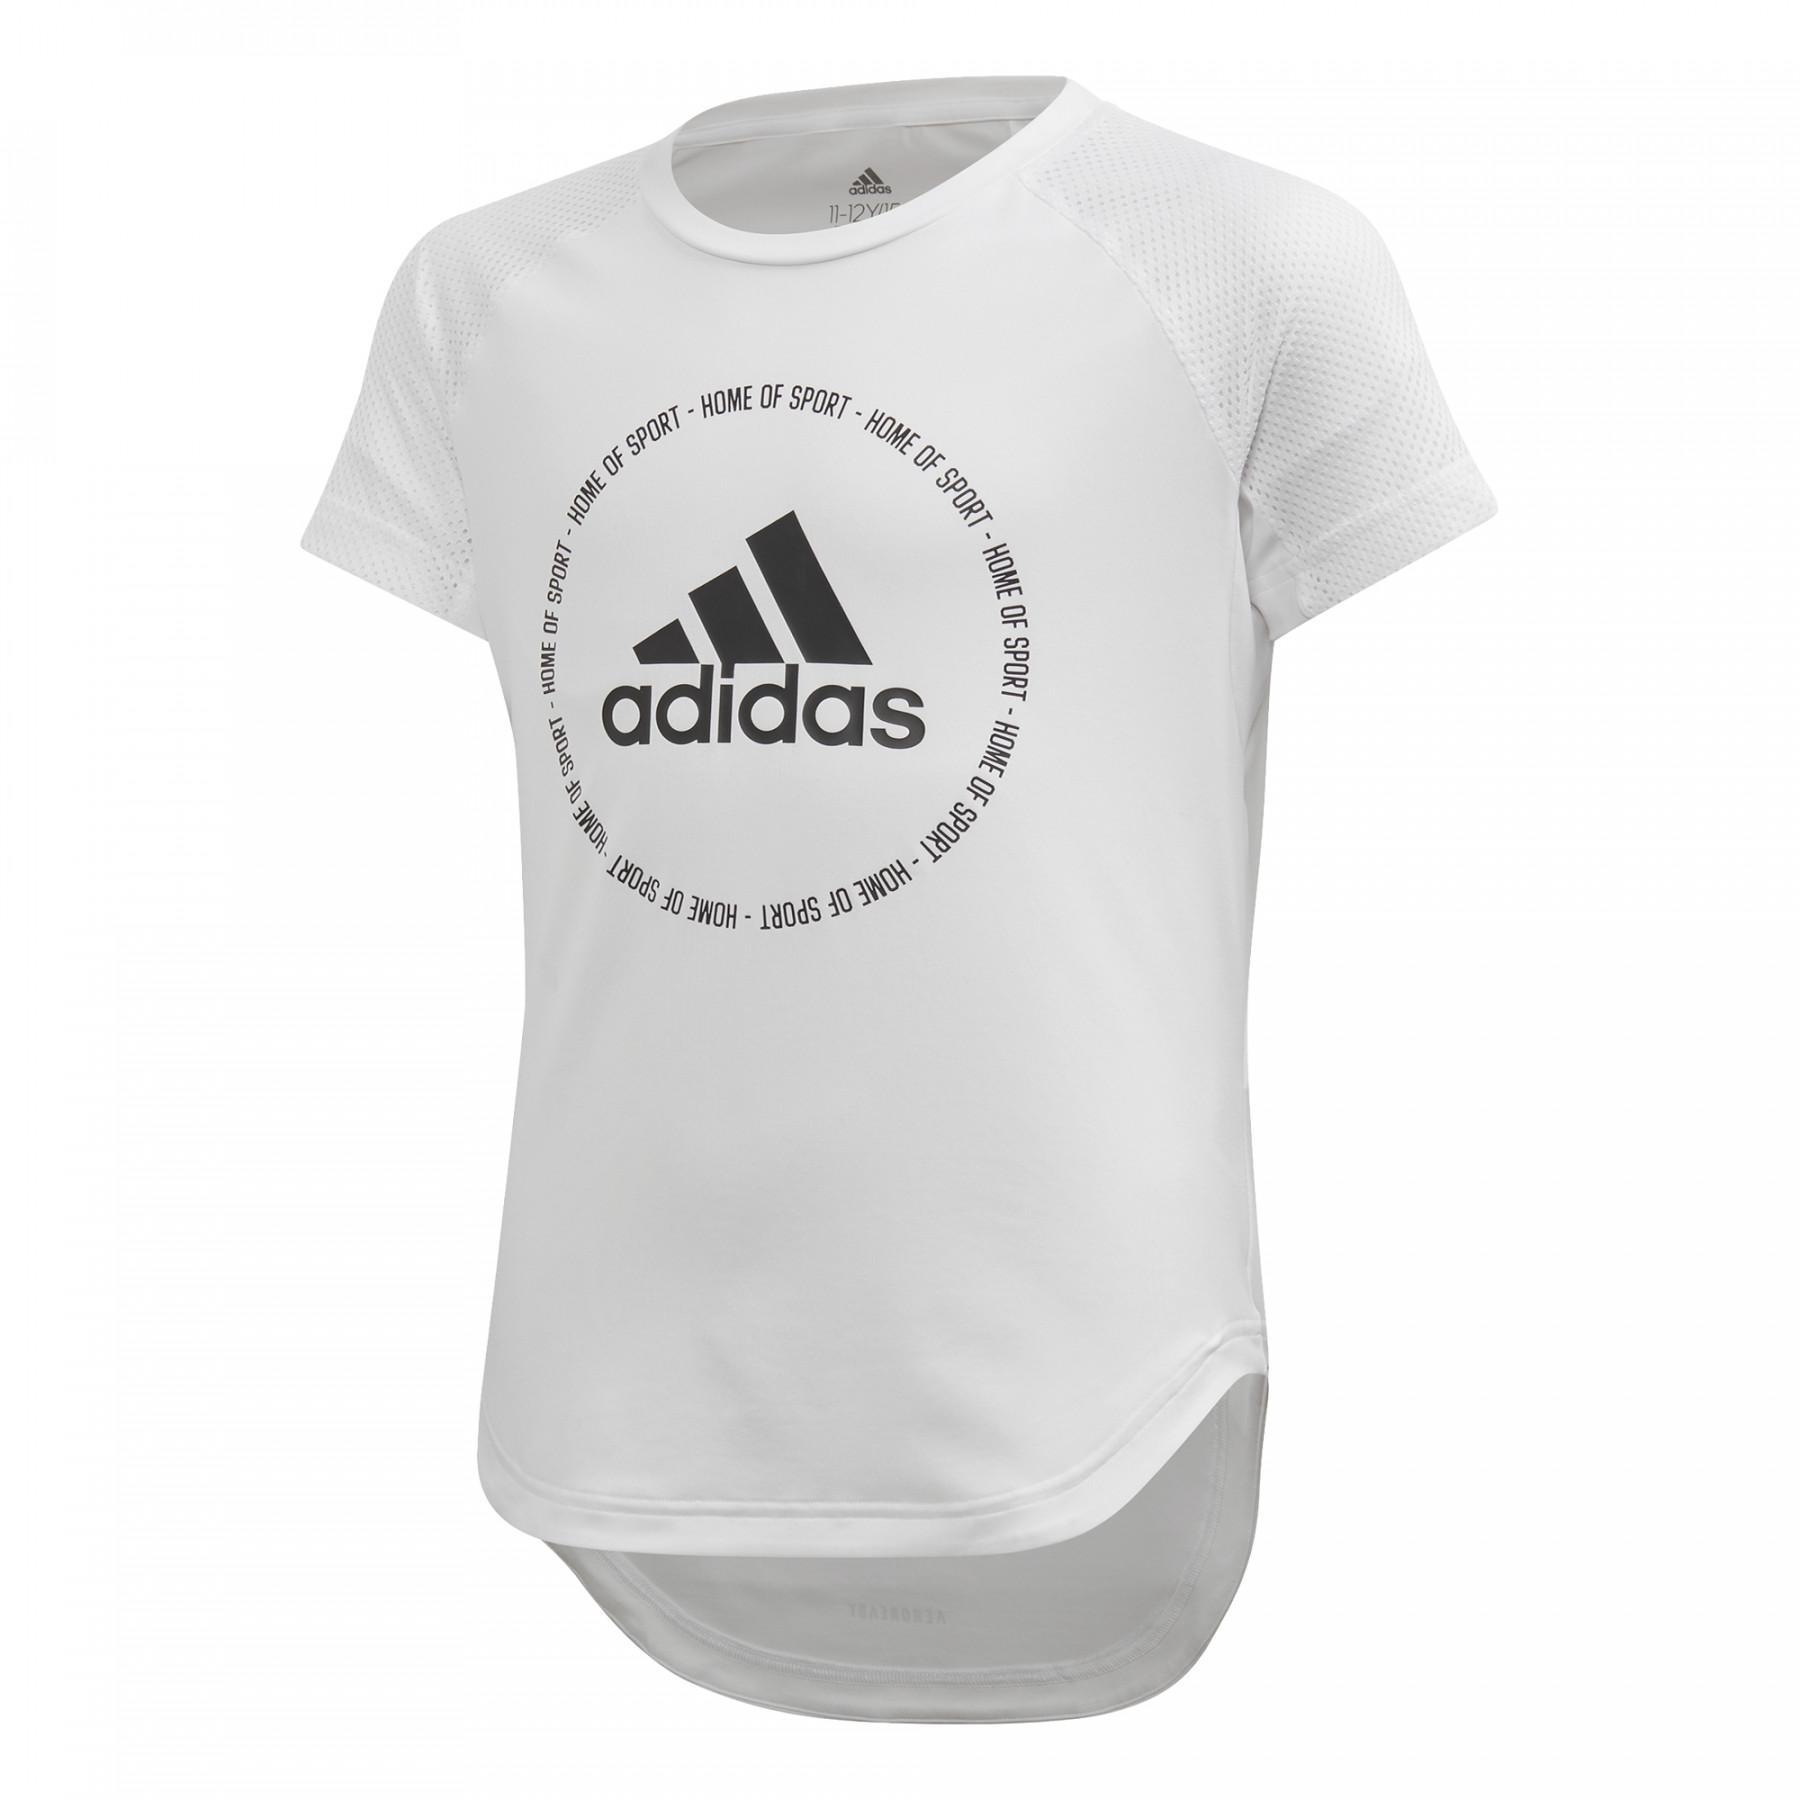 Mädchen-T-Shirt adidas Bold